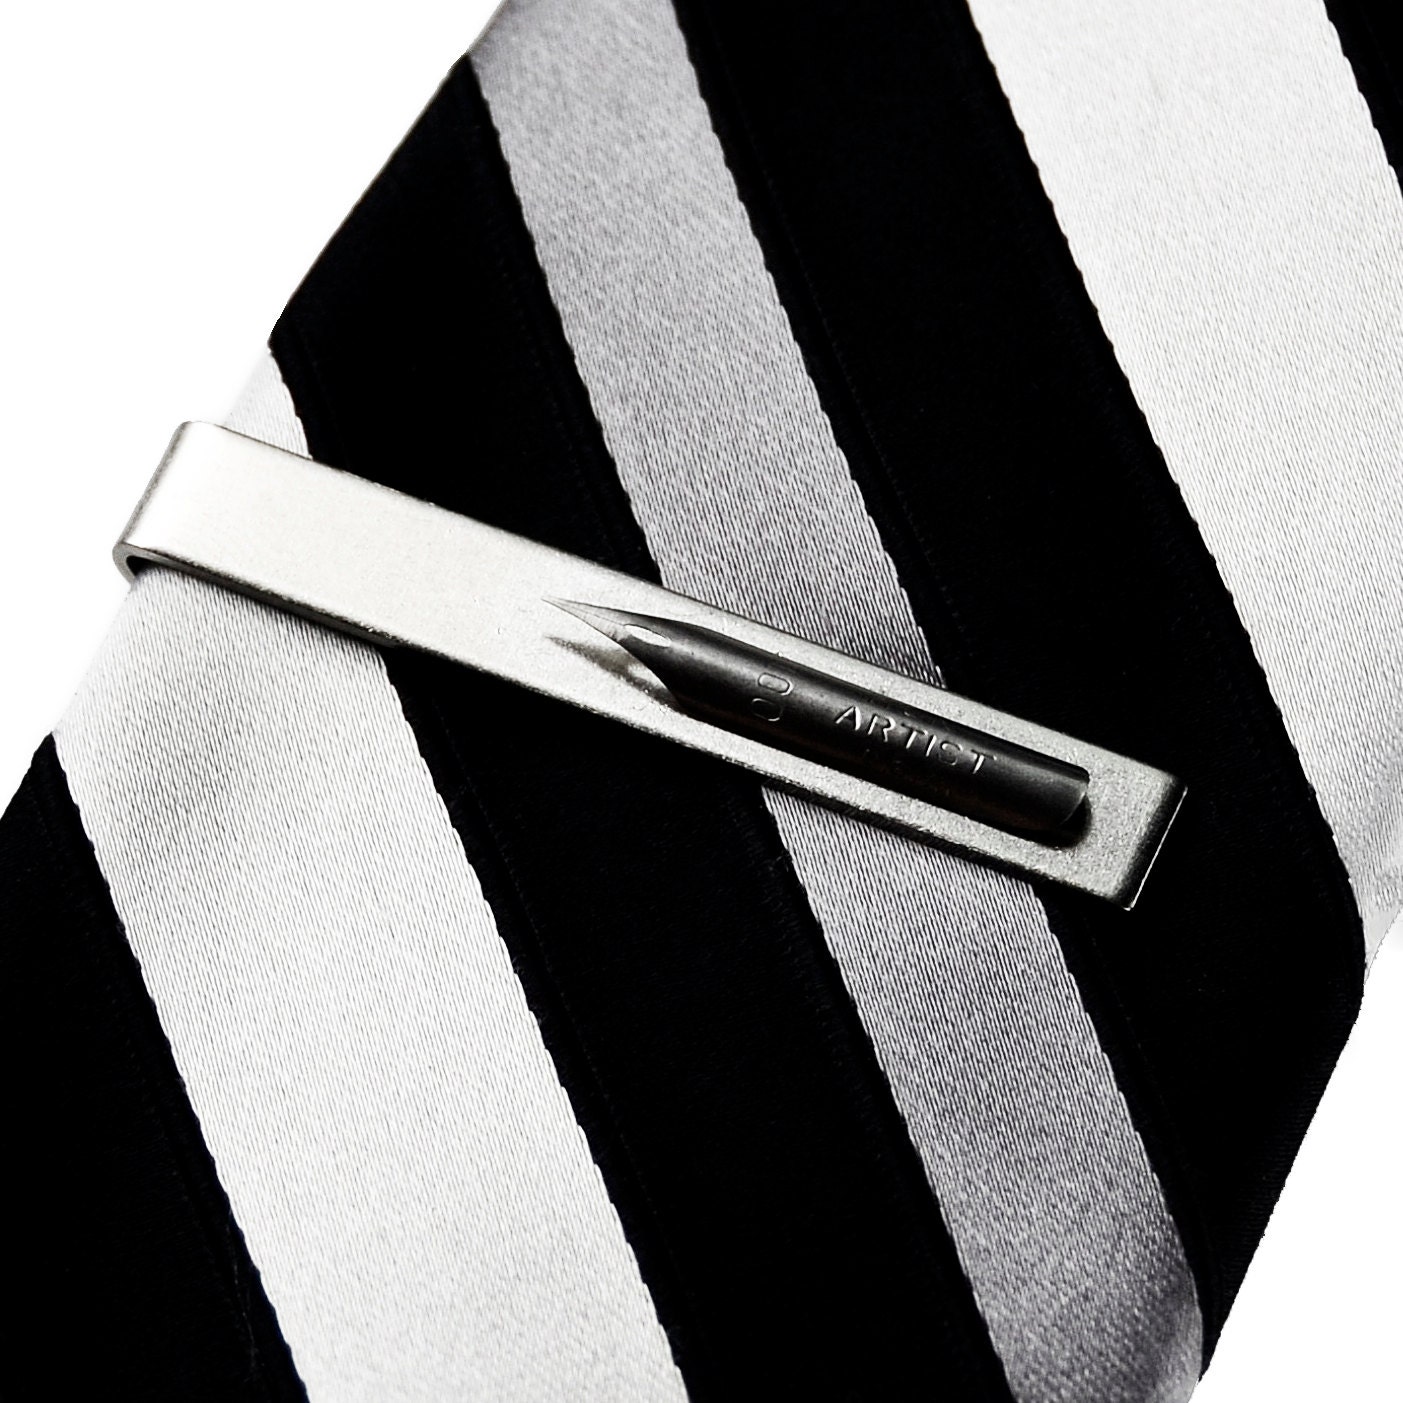 Vintage Pen Nib Tie Clip Express Yourself | Etsy